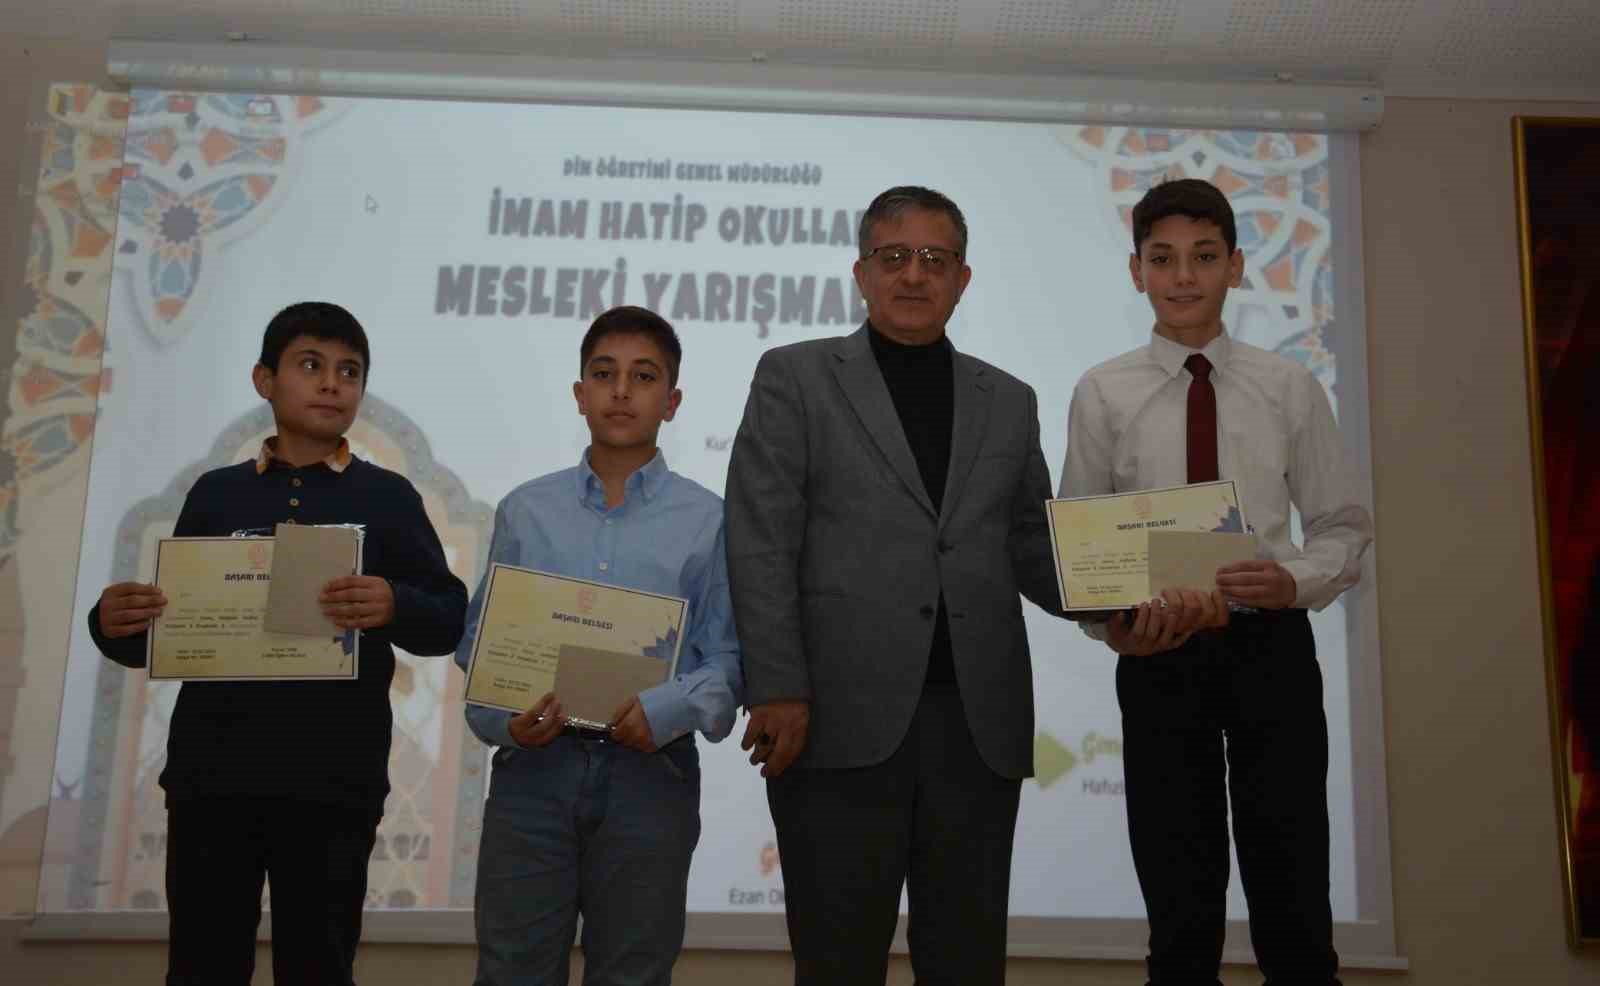 İmam Hatip Okulları “Mesleki Yarışmalarında” dereceye giren öğrenciler ödüllerini aldı